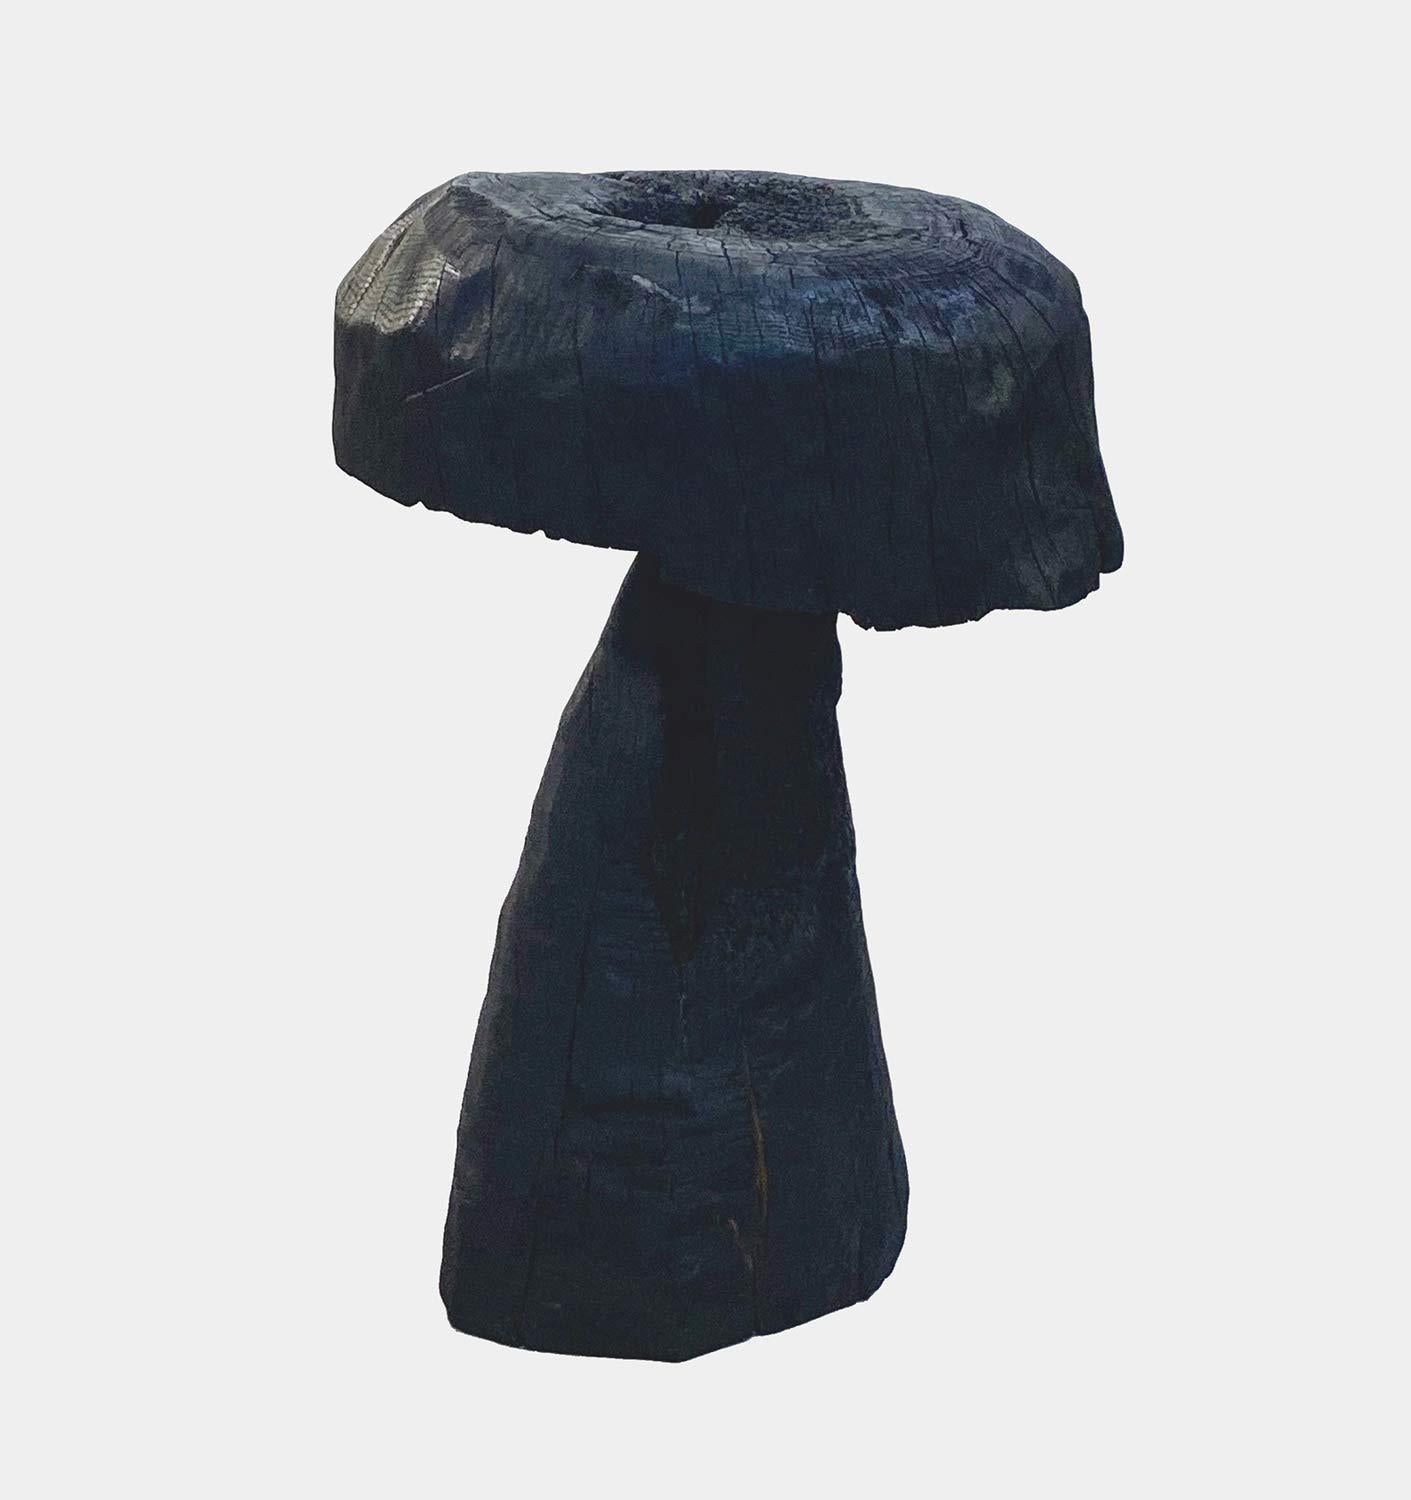 Abstract Sculpture Jonathan Shlafer - Mushroom n° 3, Amagansett, NY, 2021